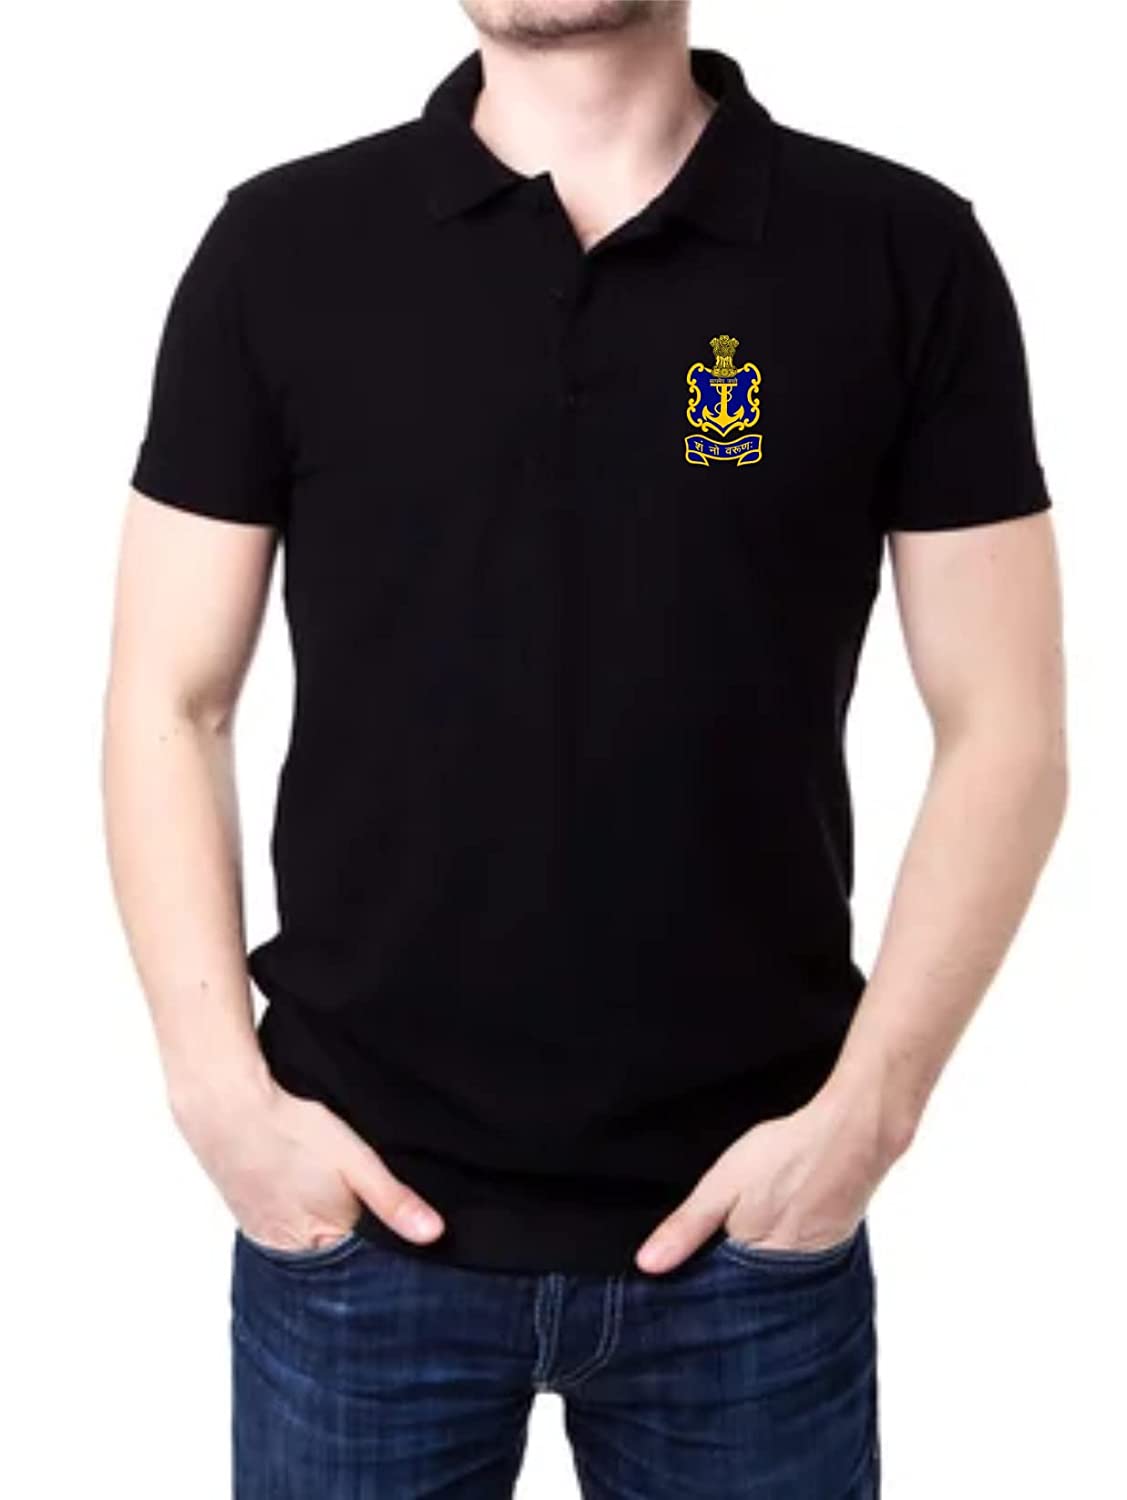 Best Indian Navy T Shirt